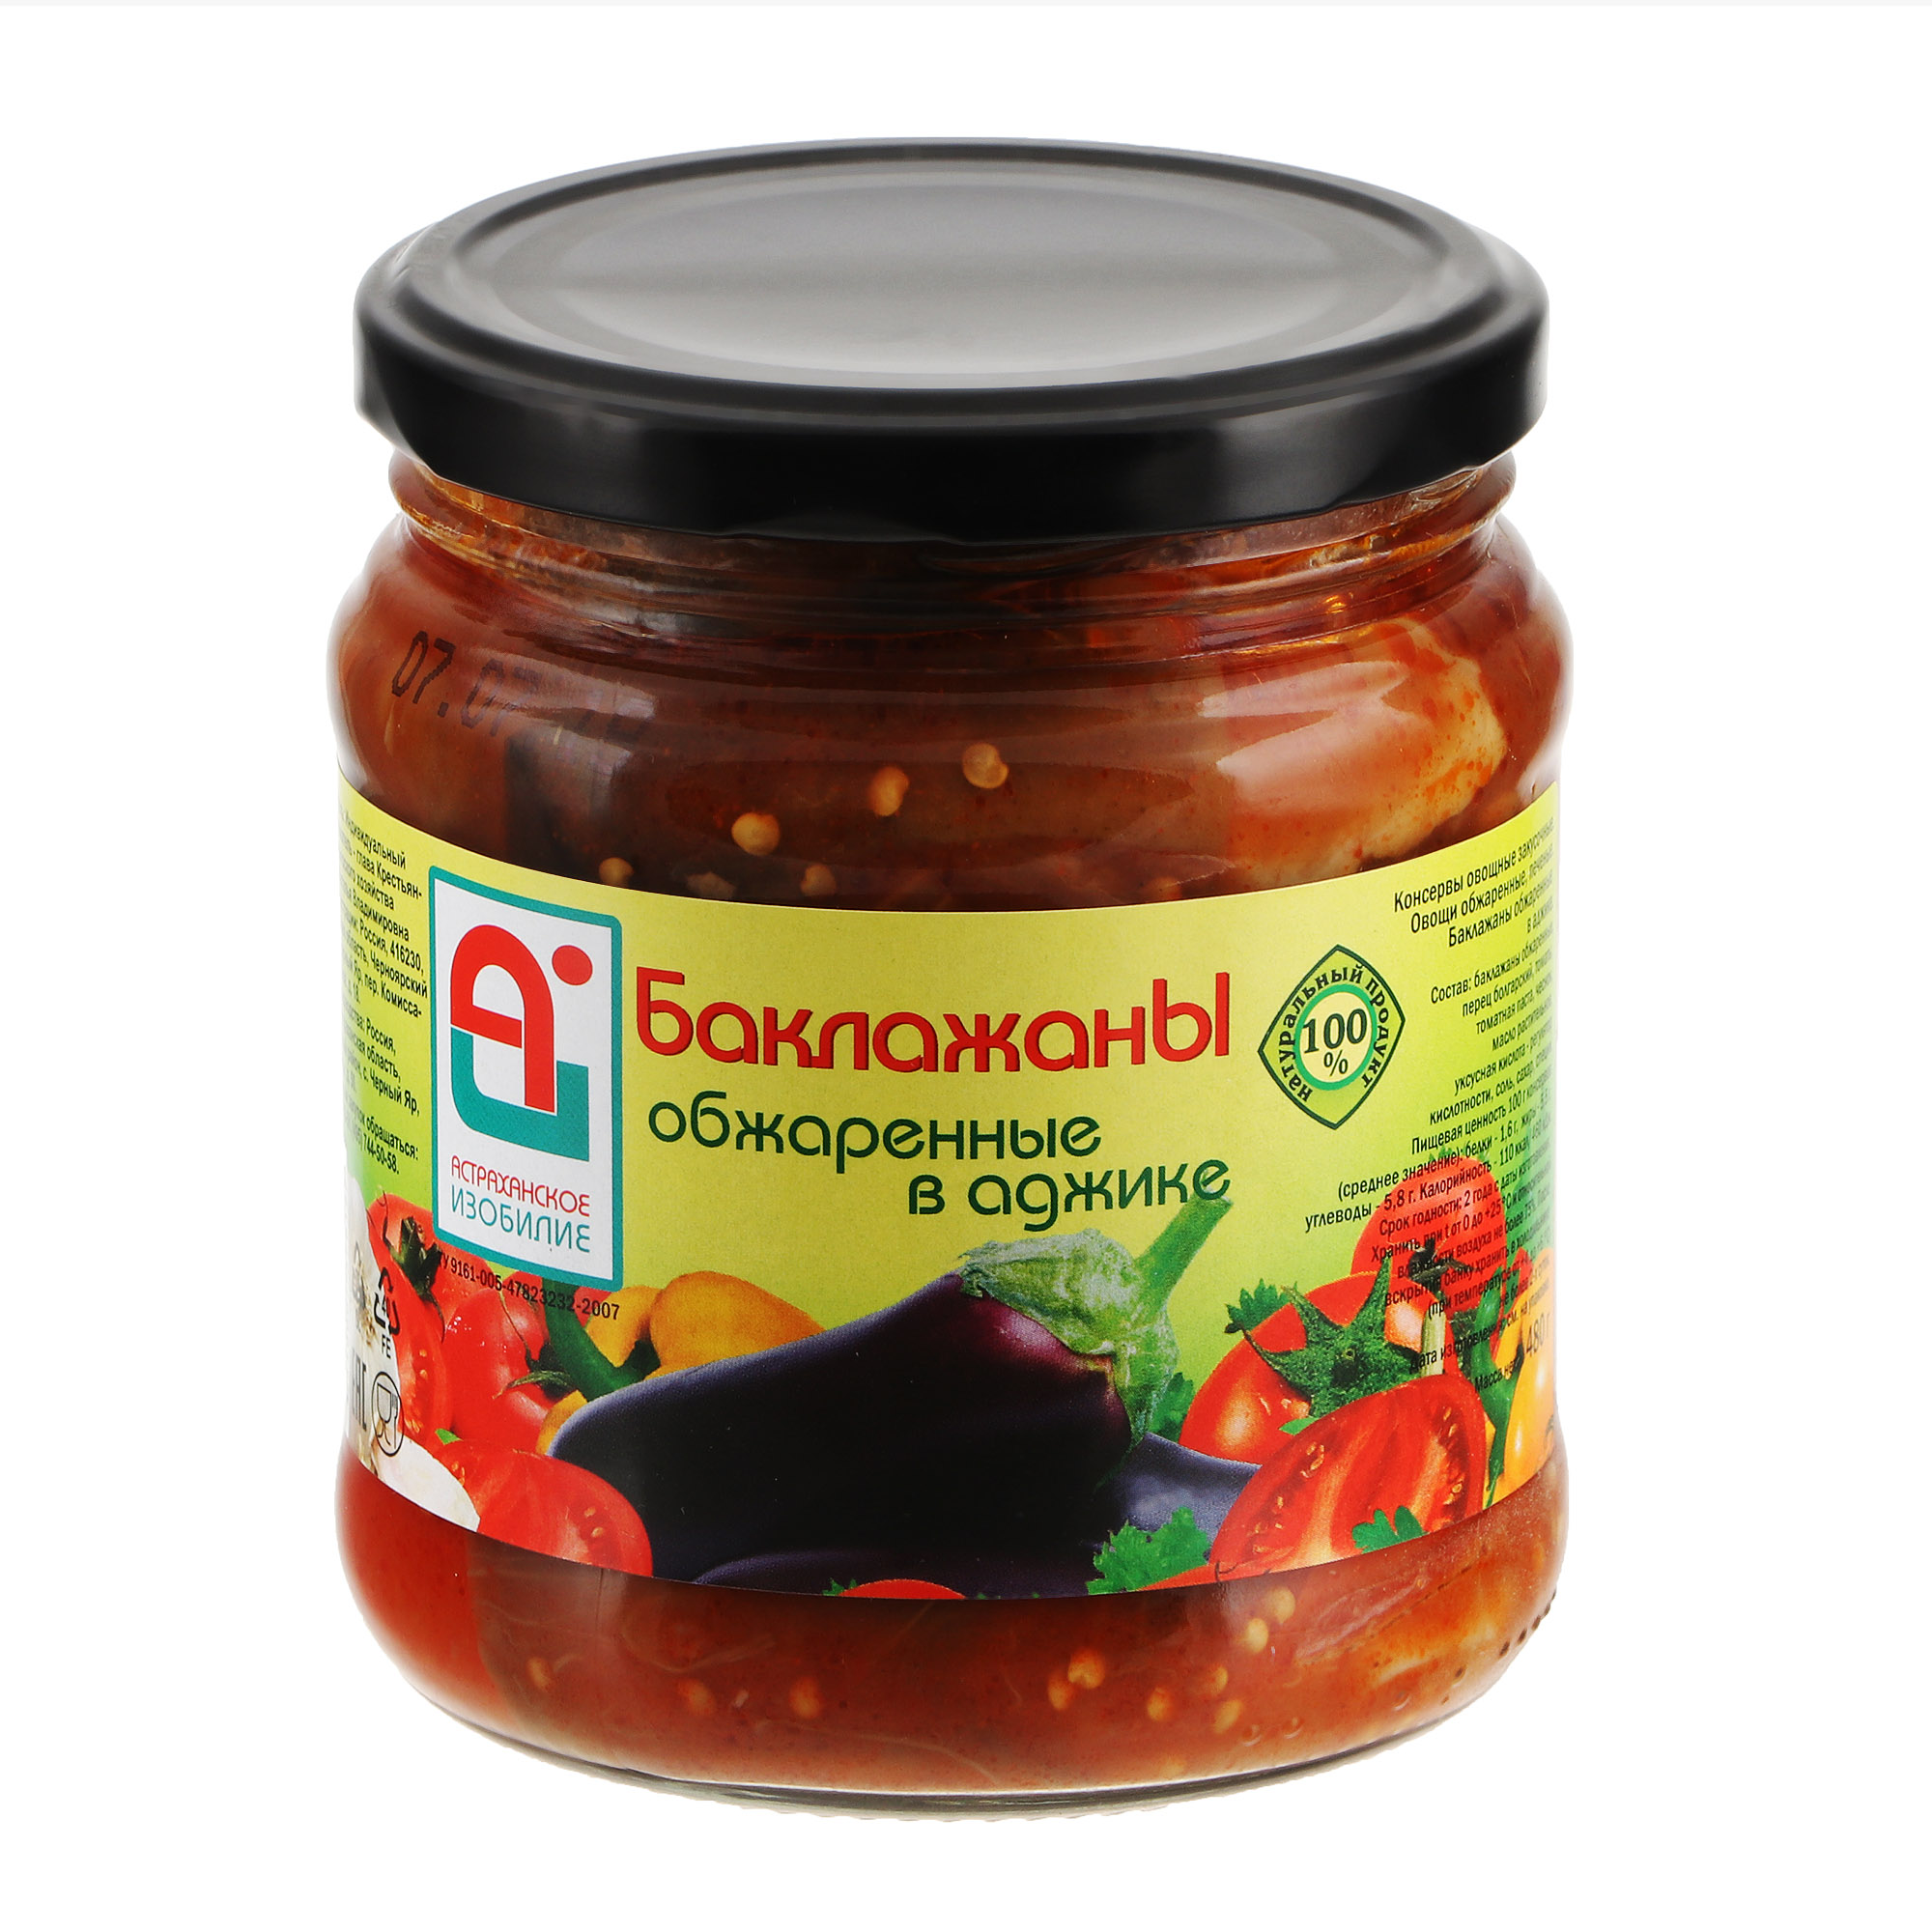 Баклажаны обжаренные Астраханское Изобилие в аджике 500 г томаты консервированные астраханское изобилие 1 л